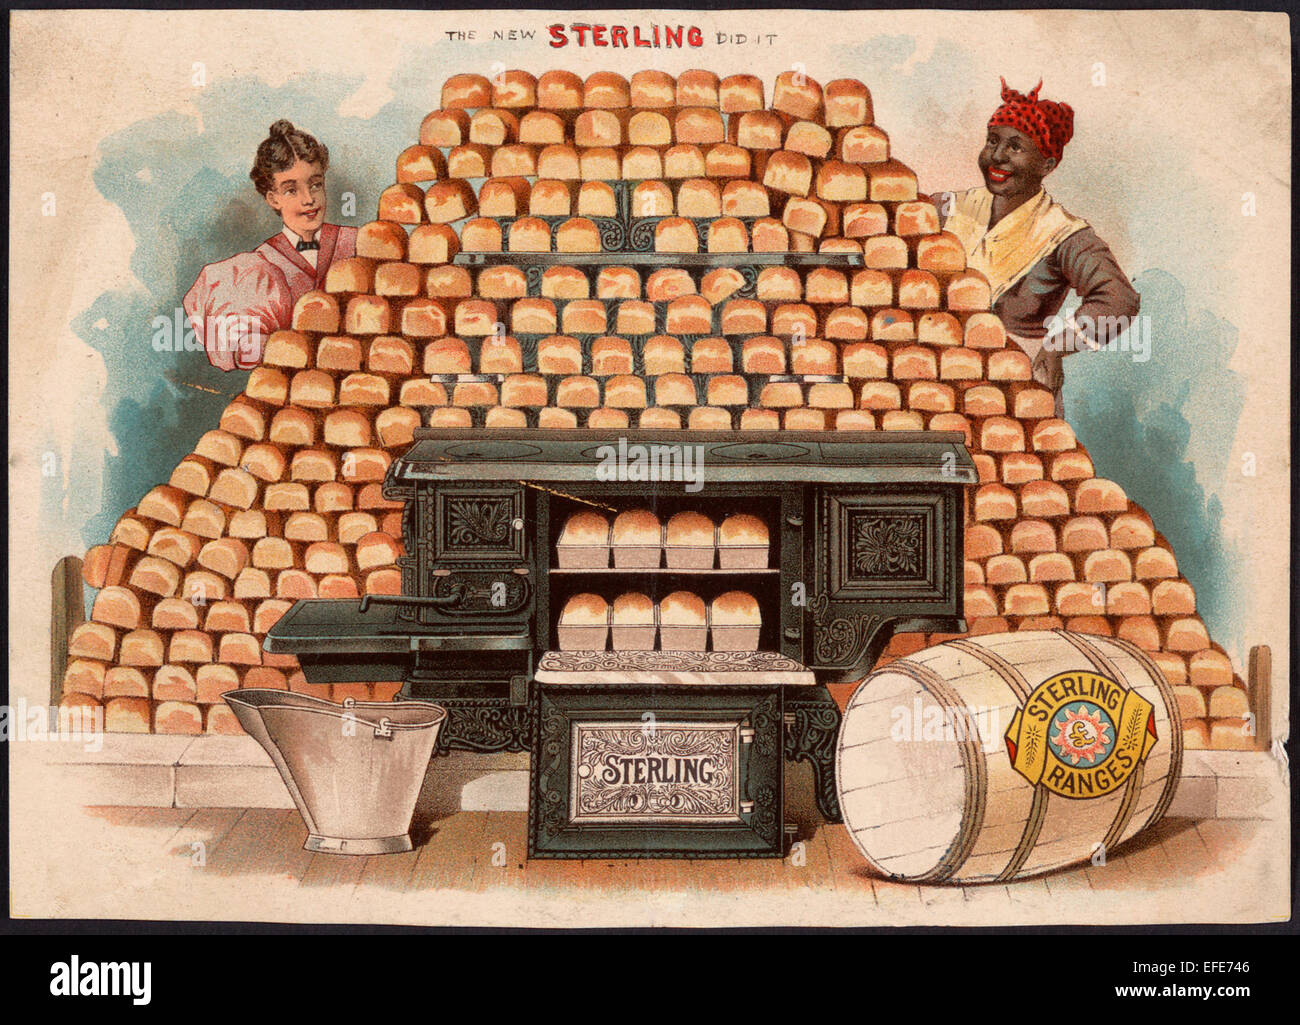 Il nuovo Sterling ha fatto. Gamme di Sterling - Pubblicità per la Sterlina in ghisa a intervalli, che mostra due donne, uno americano africano, orgogliosamente la visualizzazione di un enorme piramide delle pagnotte di pane e la stufa di ferro che ha reso possibile, circa 18996 Foto Stock